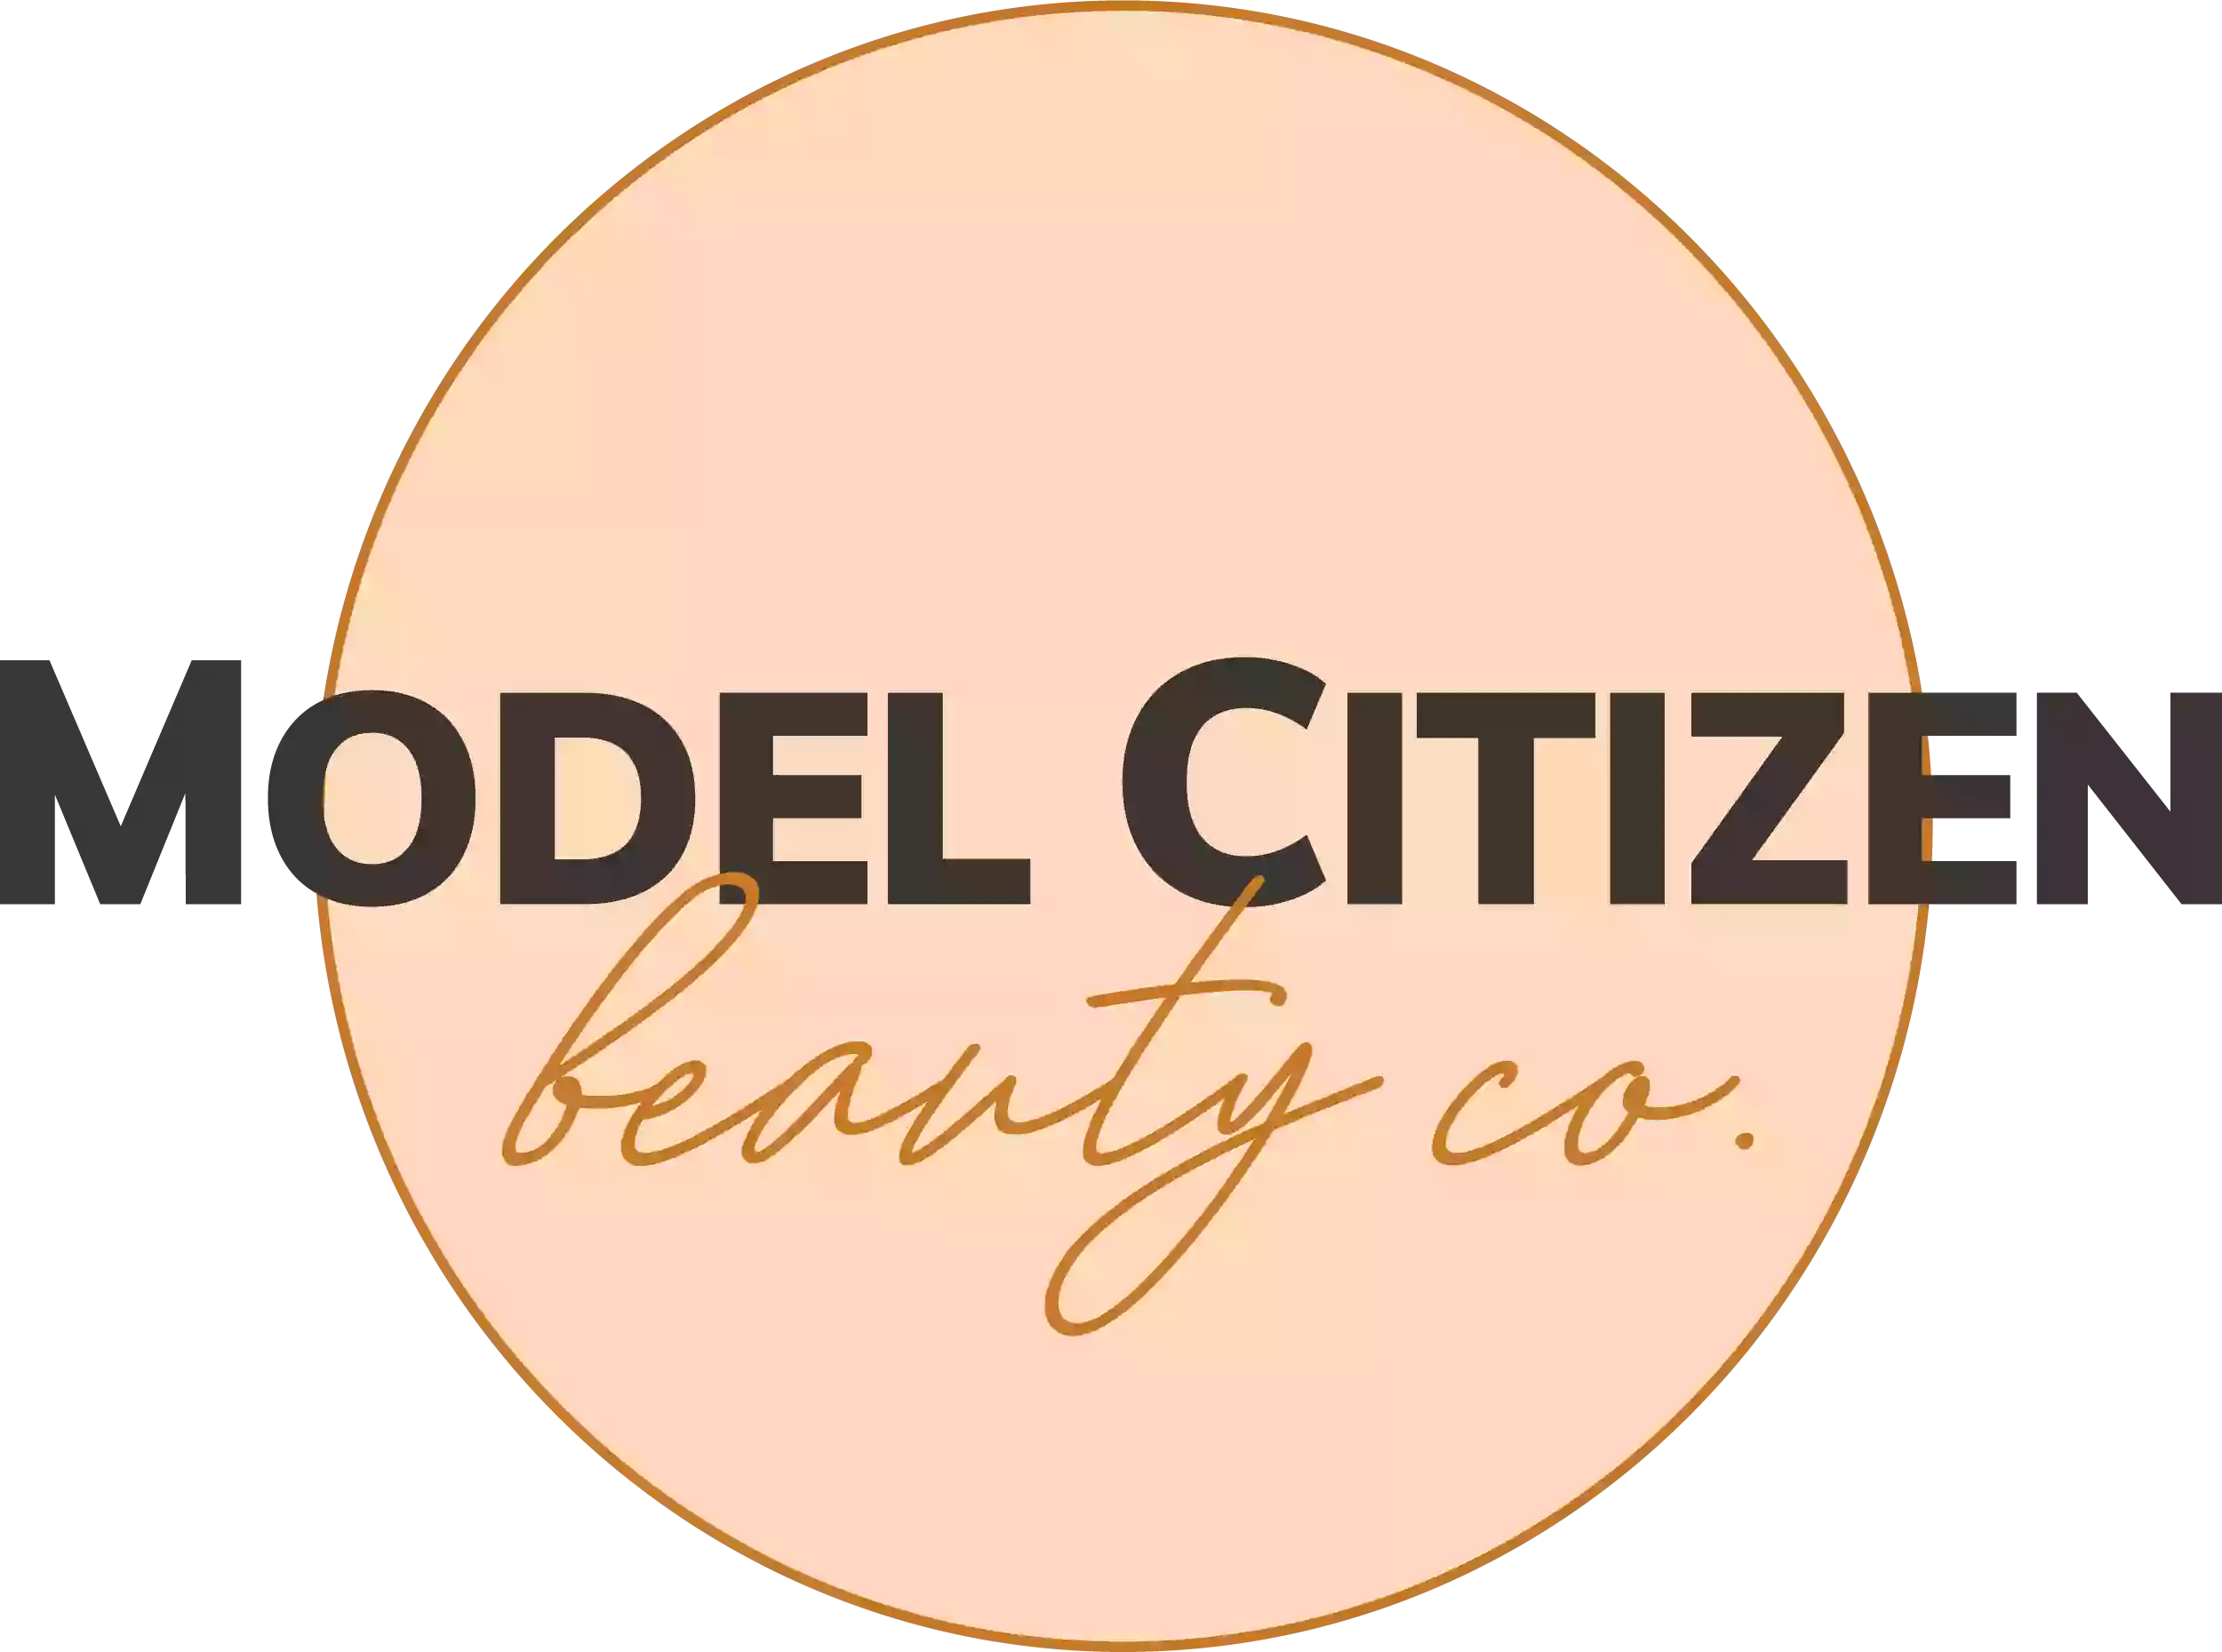 Model Citizen Beauty co